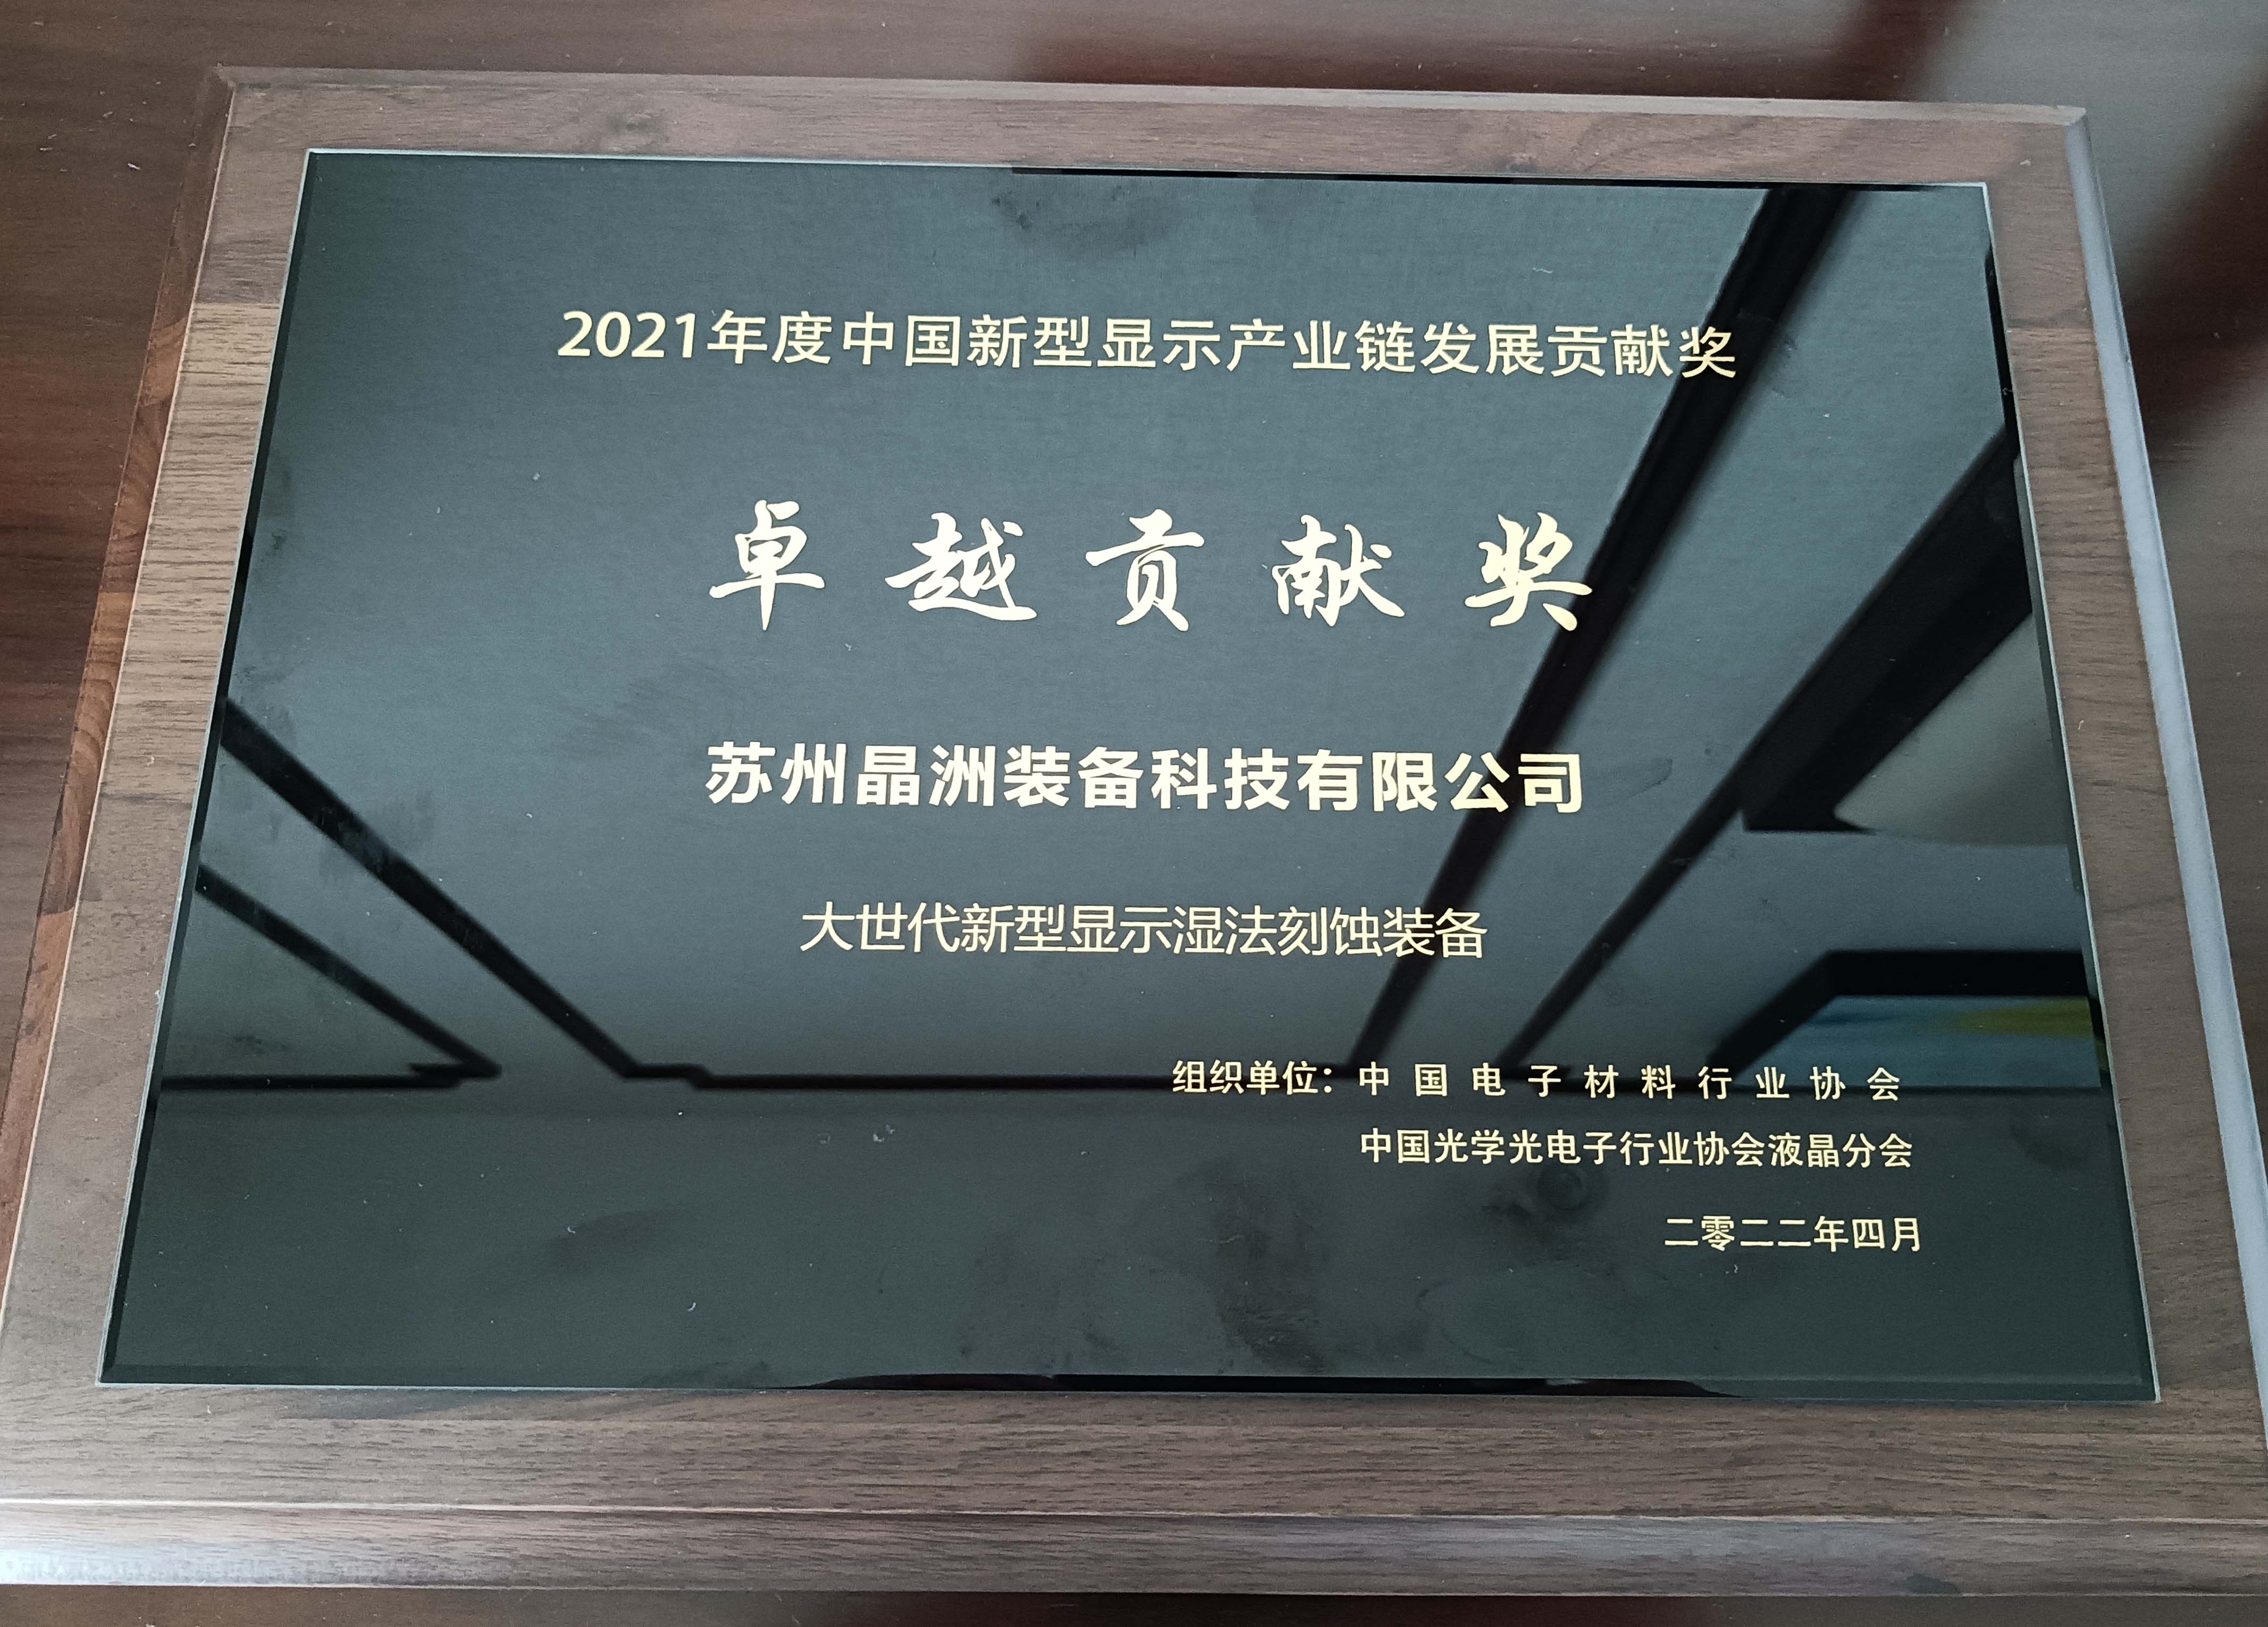 晶洲装备荣获2021年度中国新型显示产业链卓越贡献奖并发表主题演讲